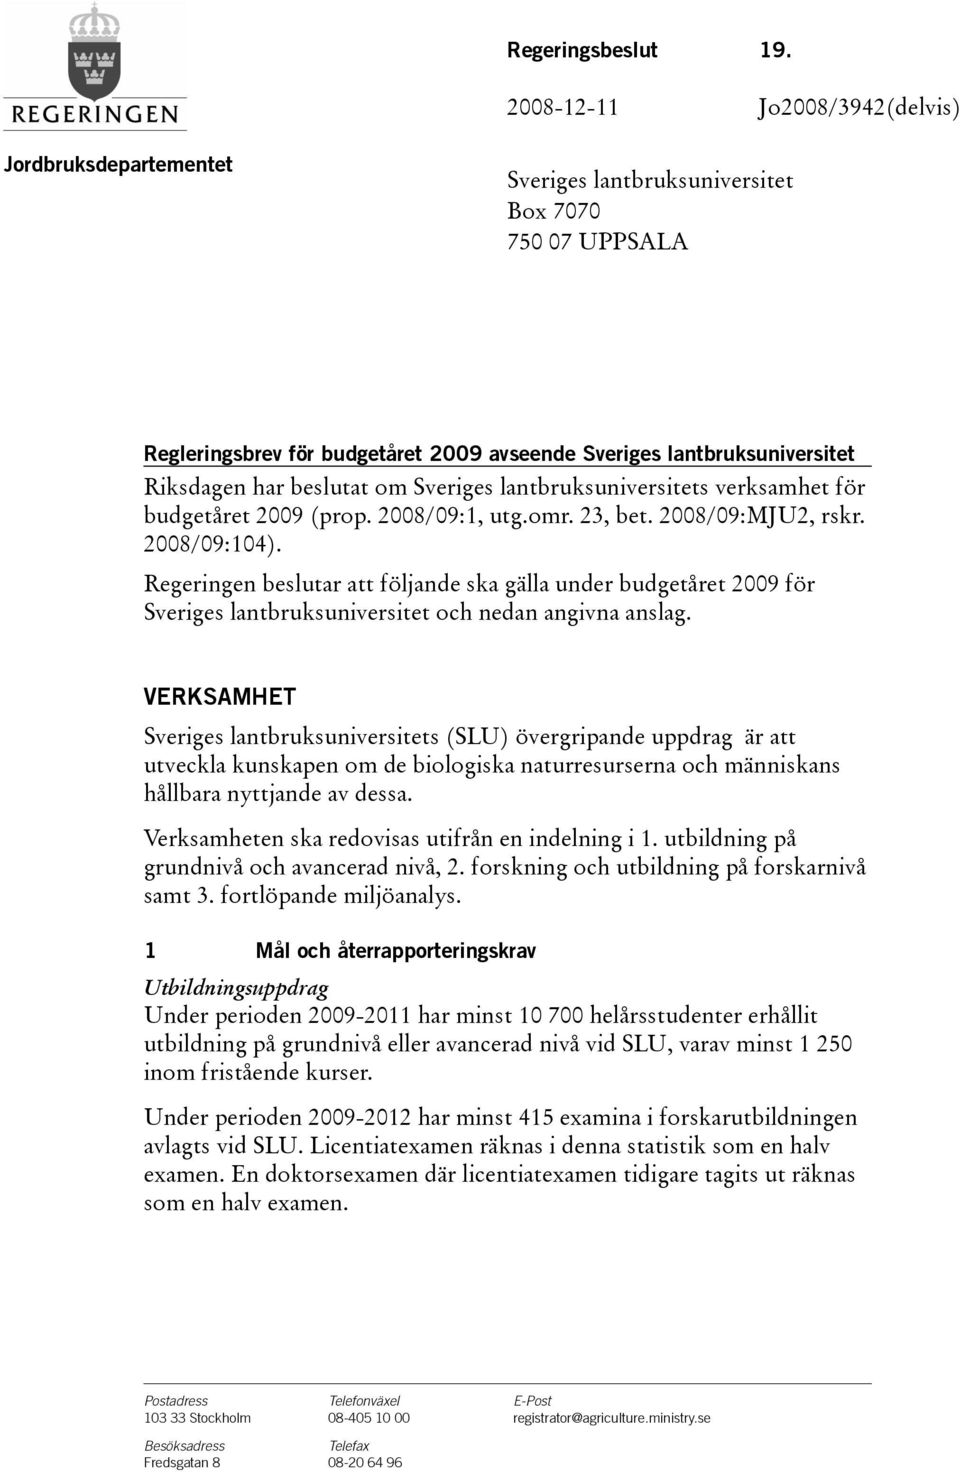 beslutat om Sveriges lantbruksuniversitets verksamhet för budgetåret 2009(prop. 2008/09:1, utg.omr. 23, bet. 2008/09:MJU2, rskr. 2008/09:104).